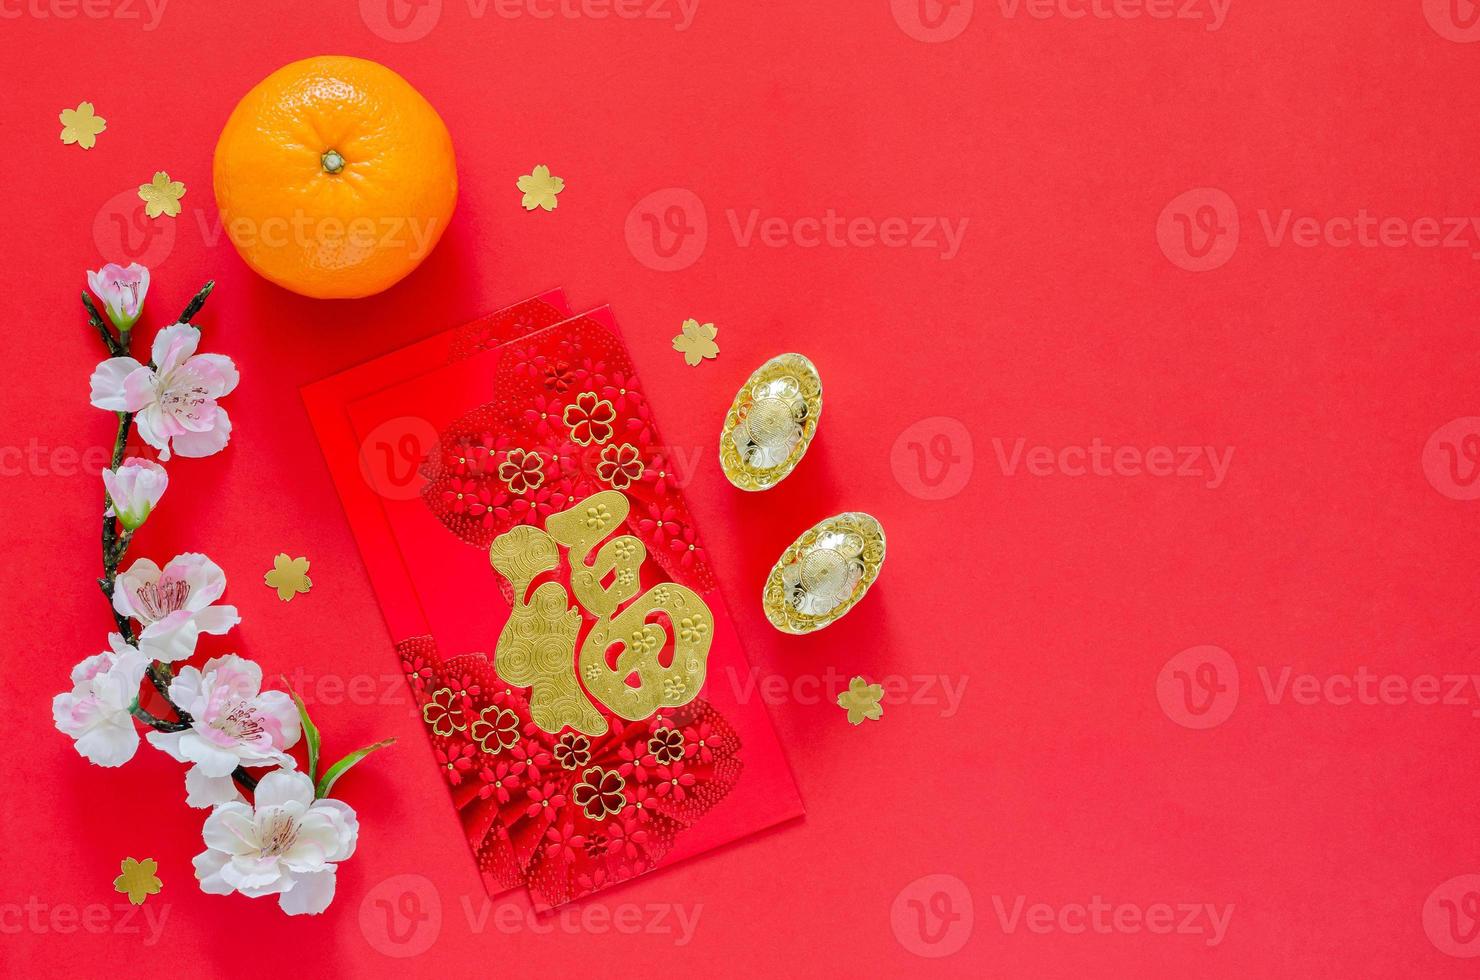 pacotes de envelope vermelho ou palavra ang bao significa riqueza com lingotes de ouro, flores de flor de laranja e chinesas para o ano novo chinês em fundo vermelho. foto